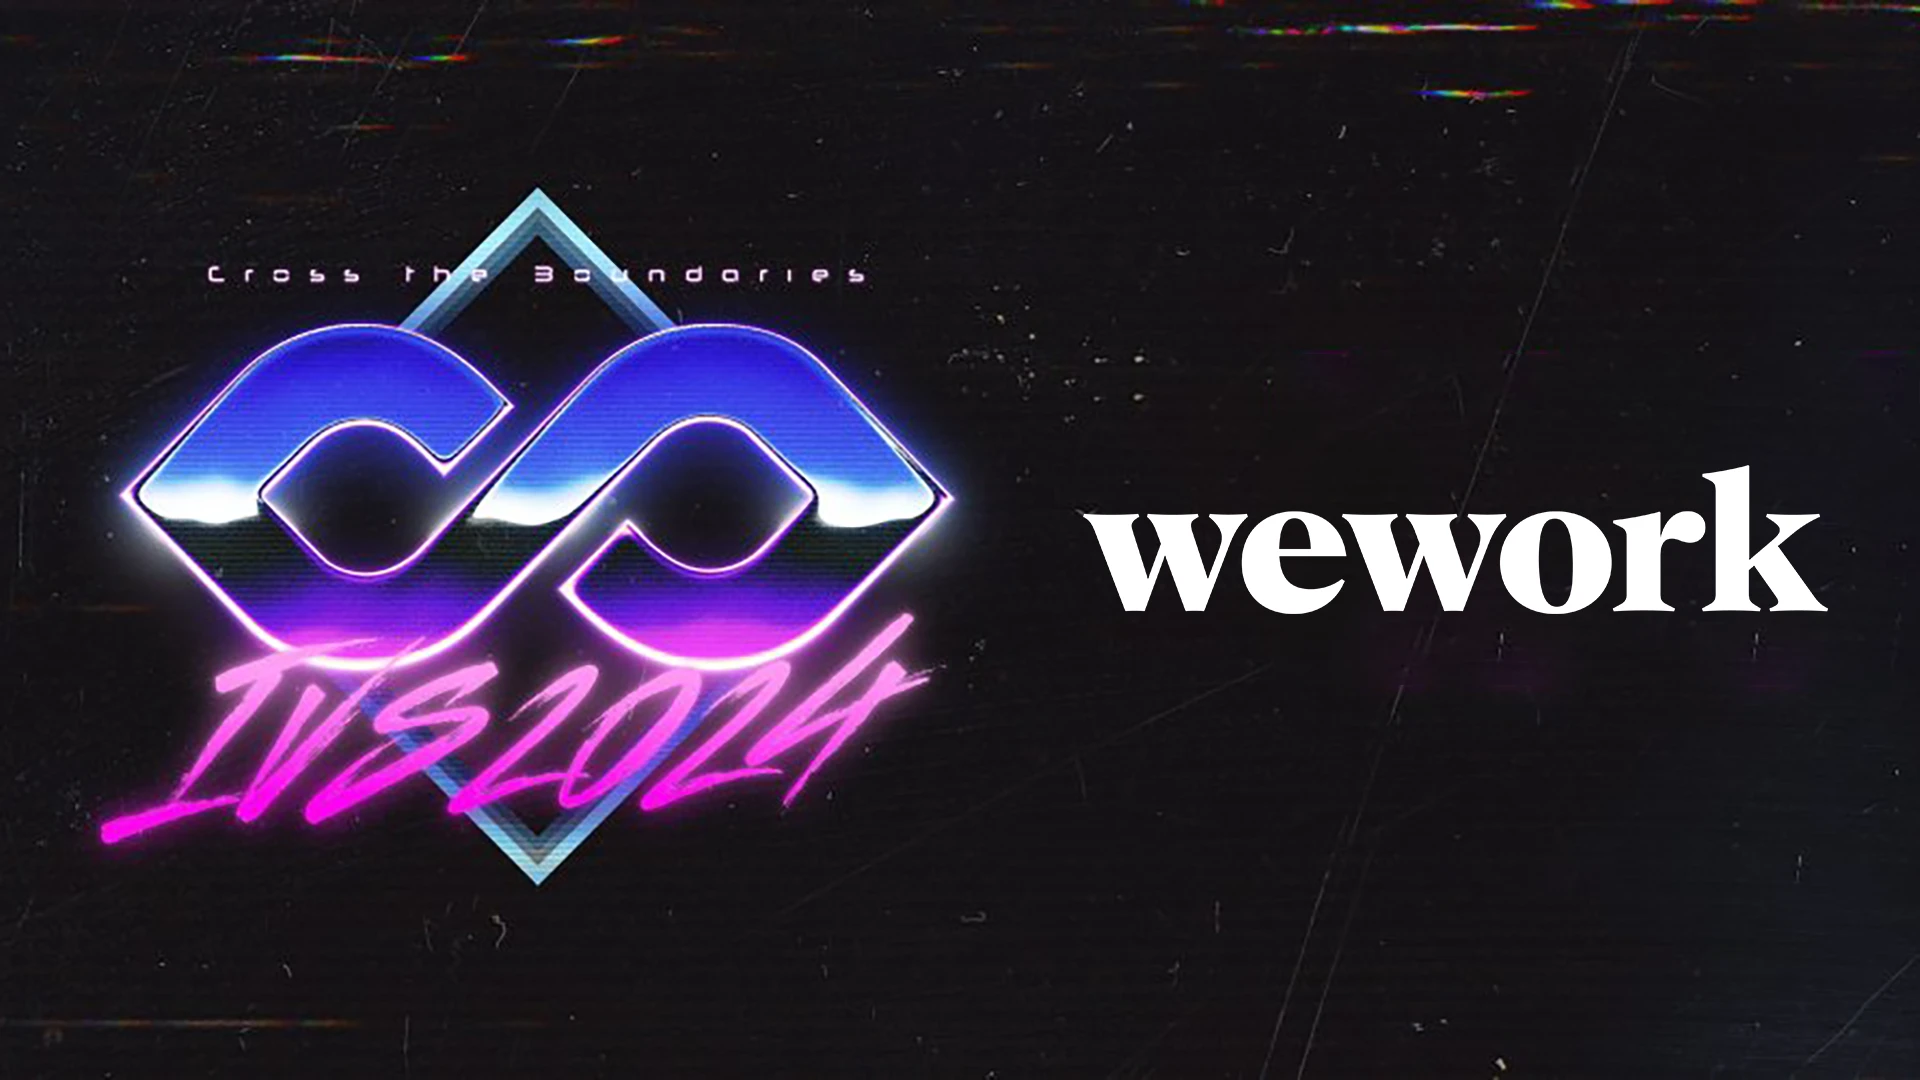 ivs_ww_logo